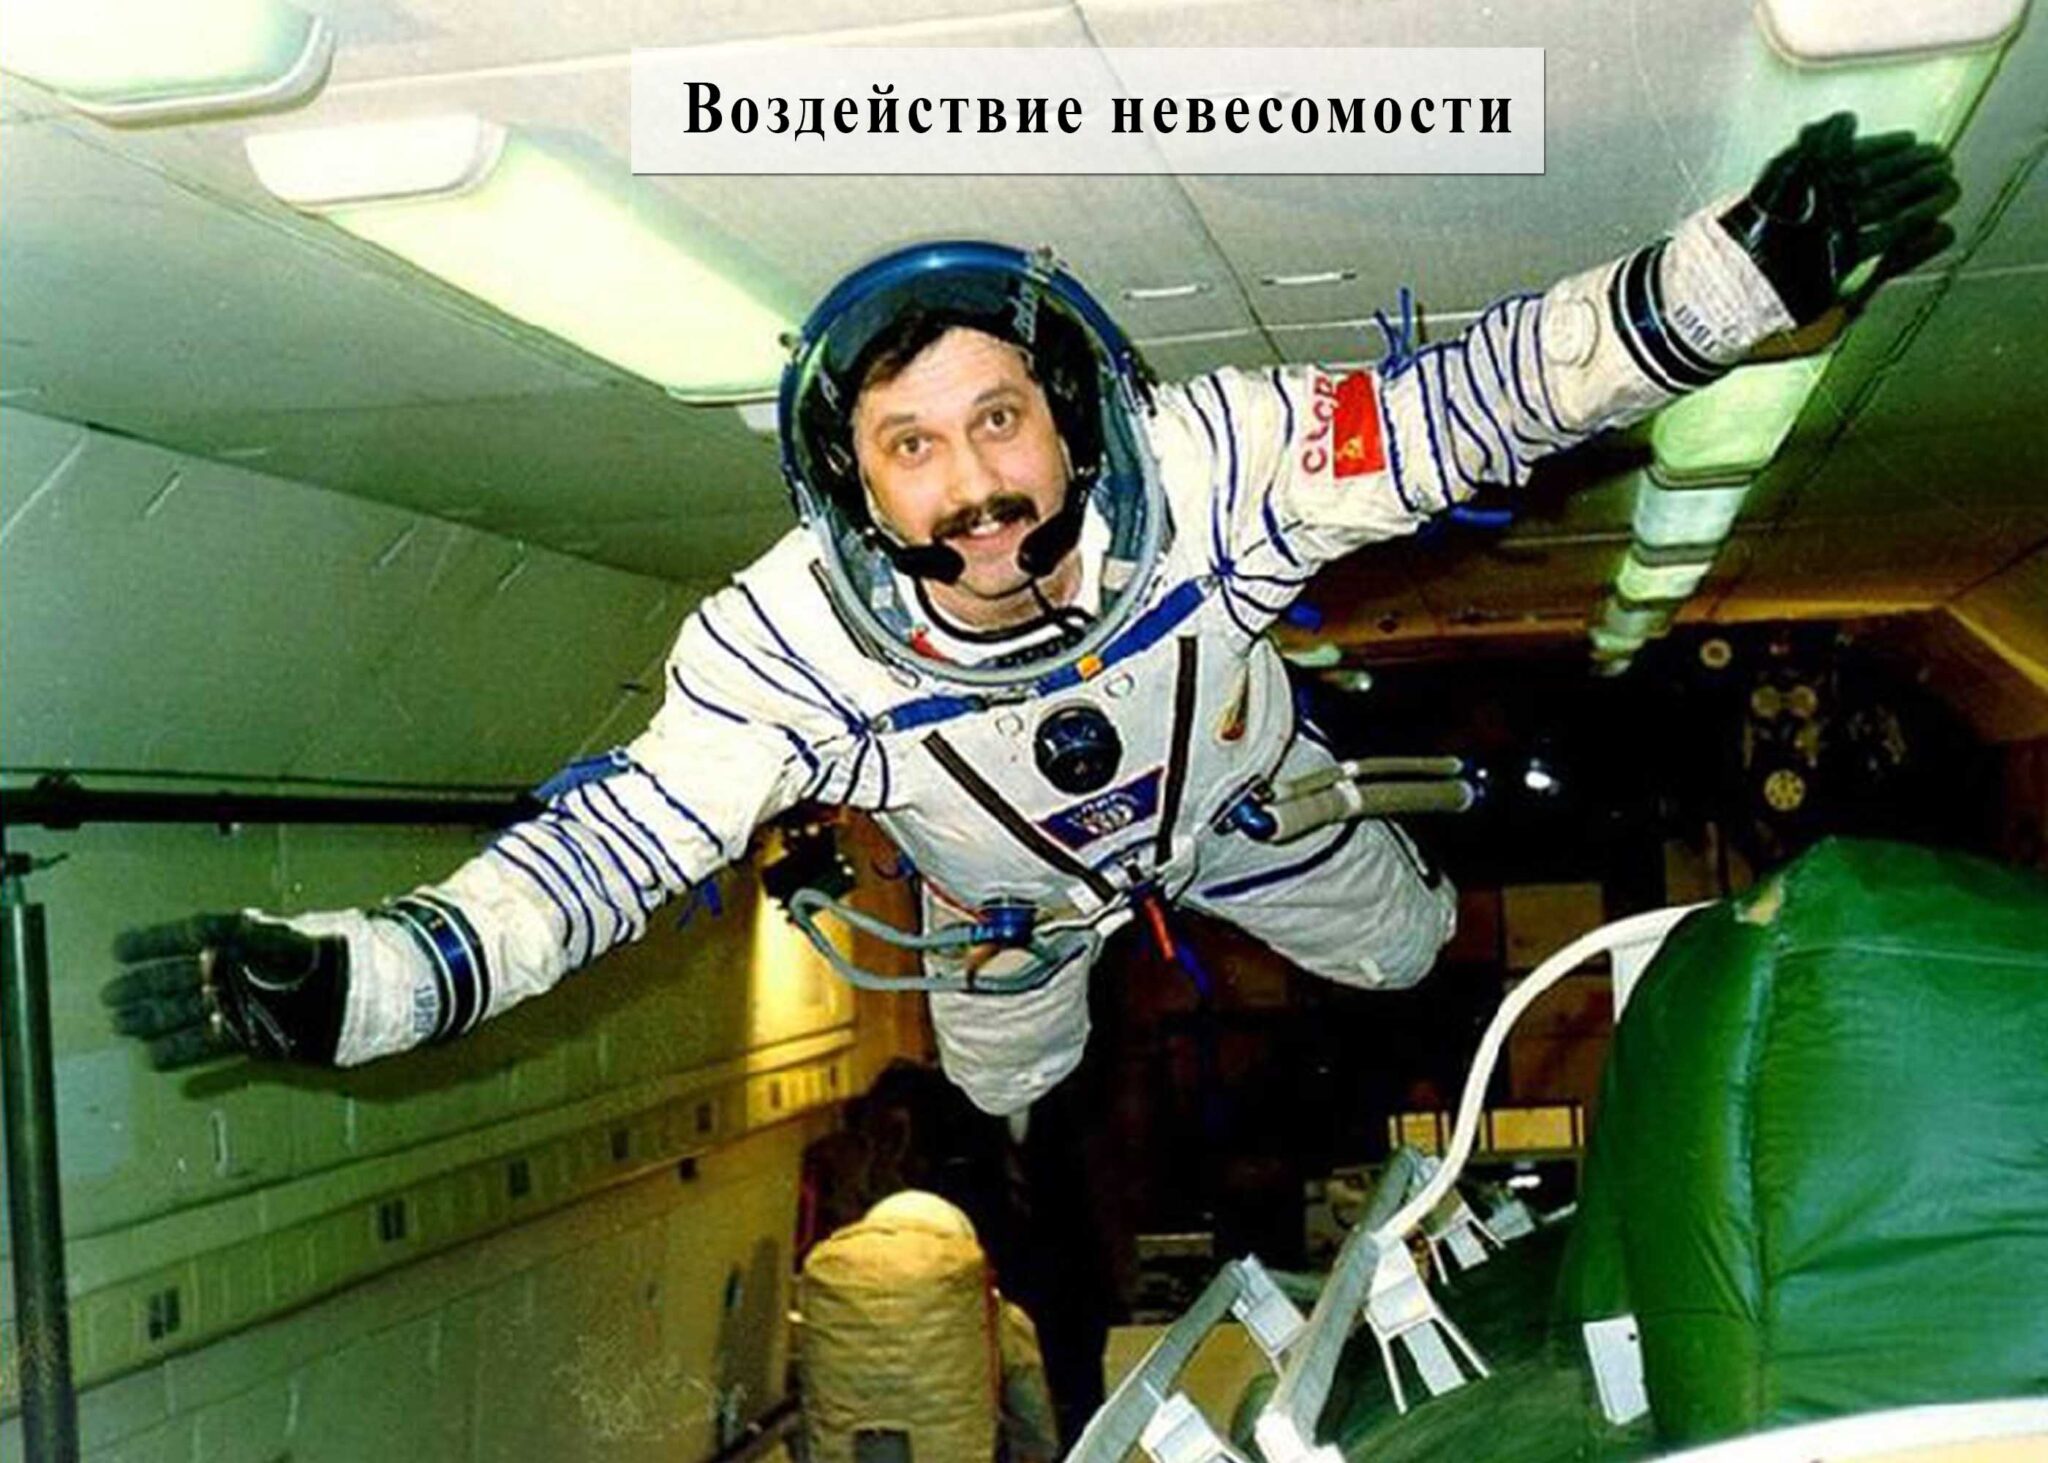 Космонавт совершивший самый длительный полет в космос. Космонавты в космическом корабле. Космонавт в корабле. Невесомость в космосе. Состояние невесомости.